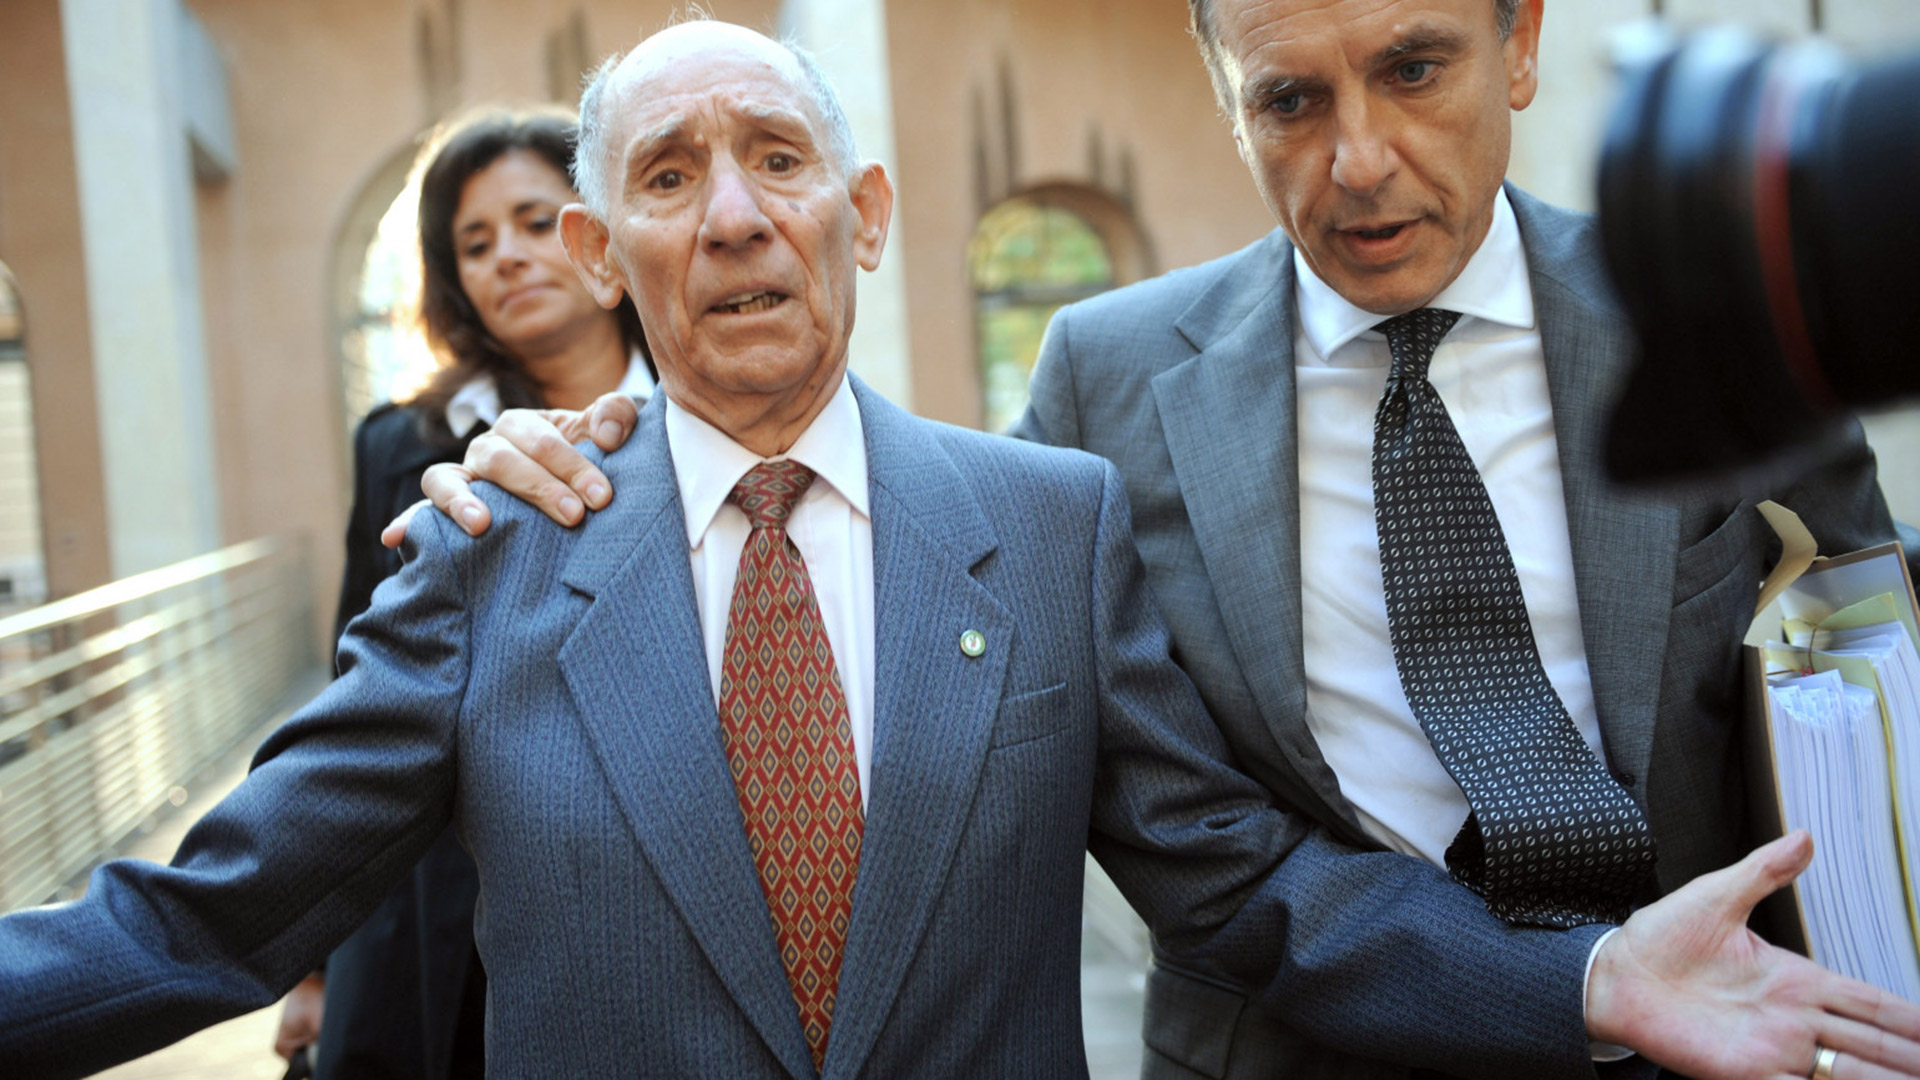 Pierre Rambla durante el juicio contra su hijo Jean-Baptiste Rambla, en octubre de 2008. (MICHEL GANGNE / AFP)